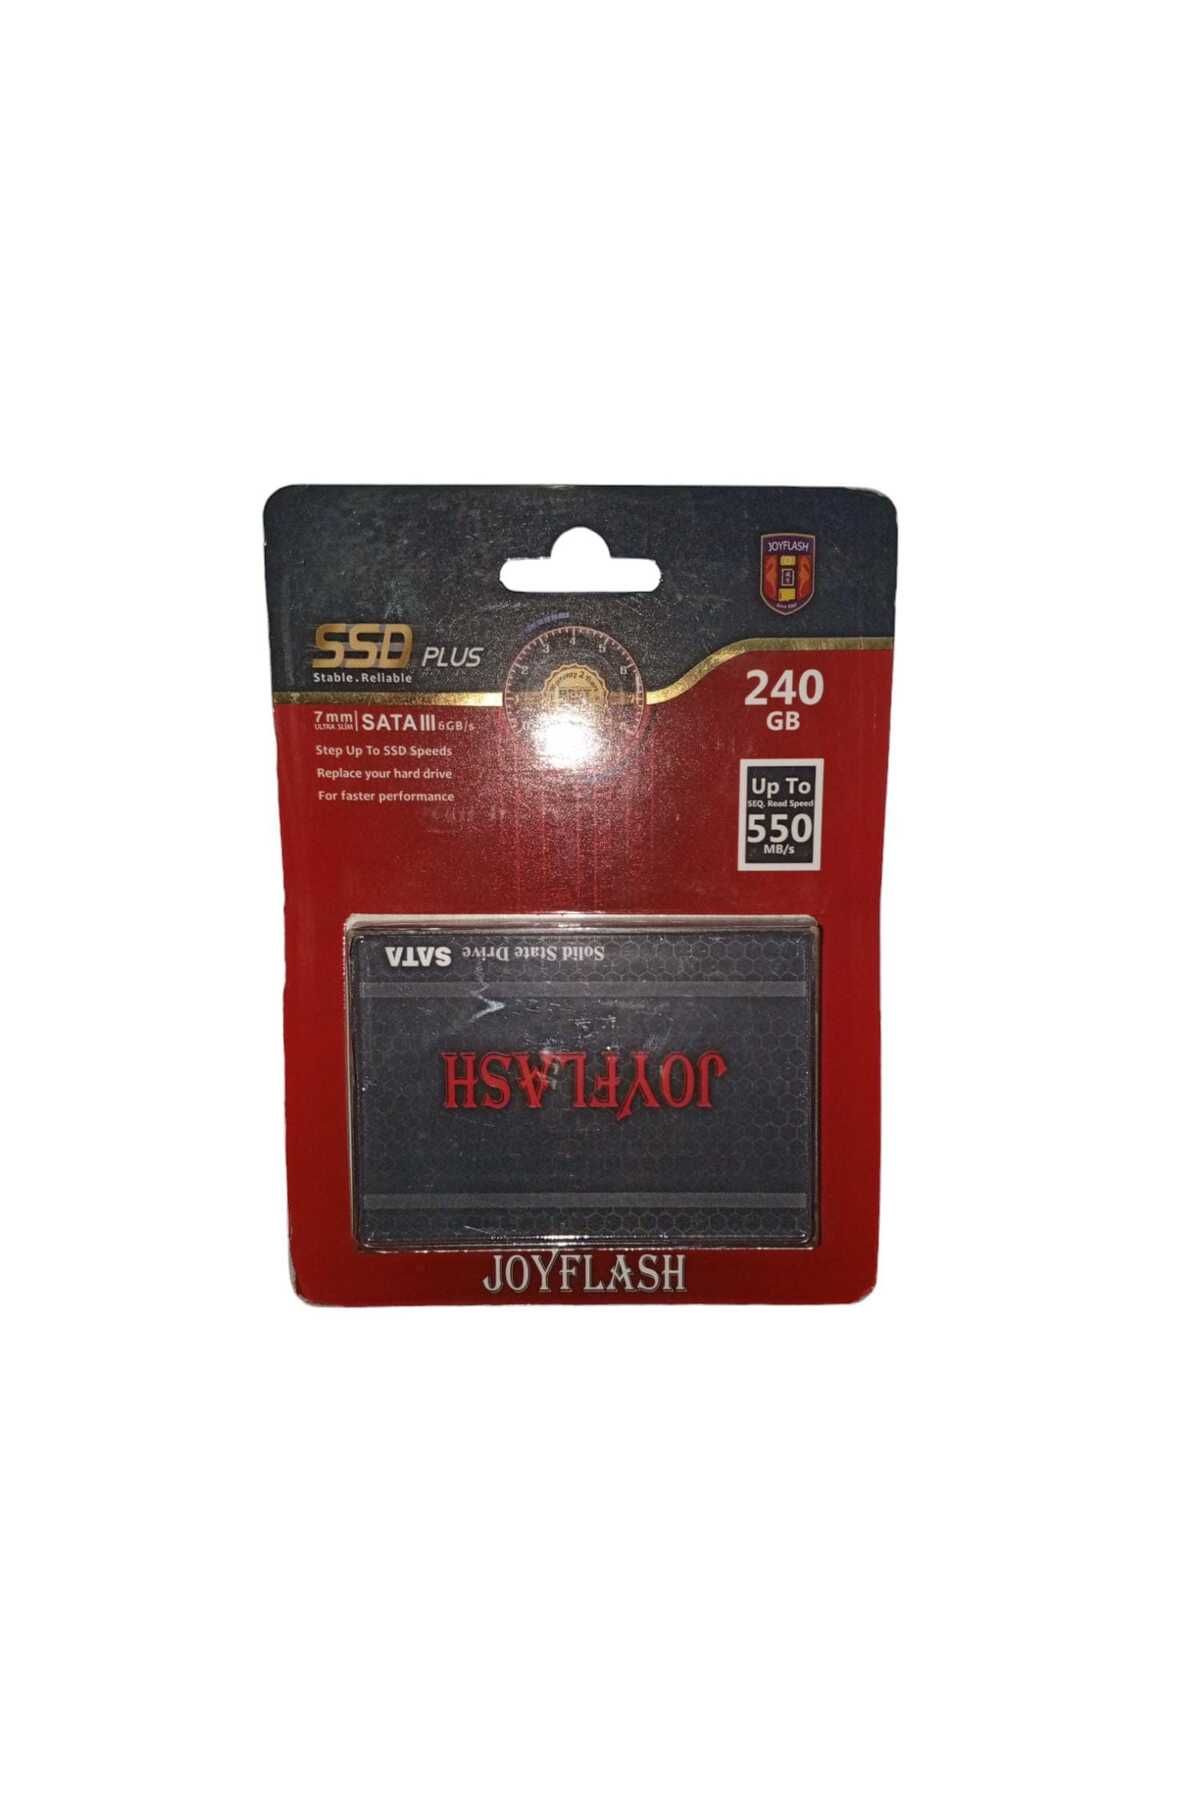 DIGERUI 7mm Ultra Slim Ssd 240 Gb Joyflash Hard Disk Hız 550mb/s Sata111 6gb/s